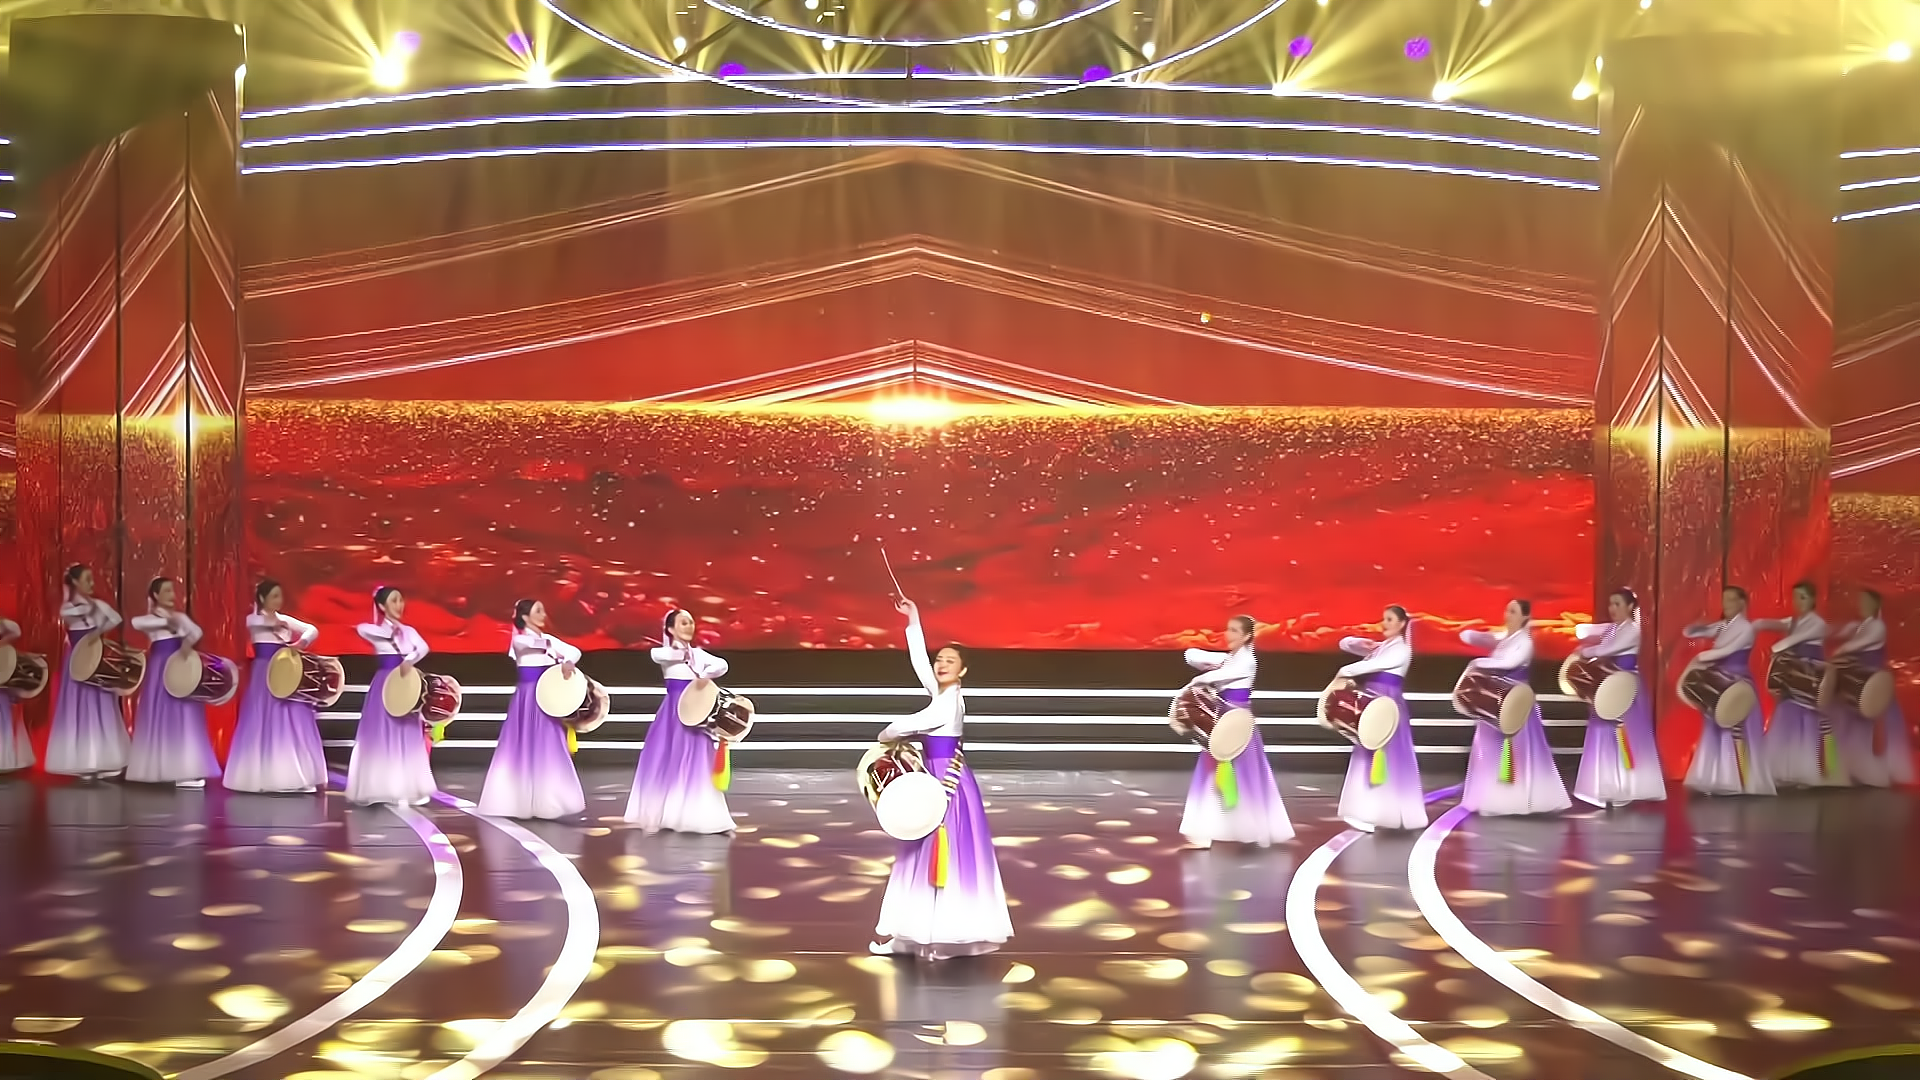 朝鲜族经典舞蹈《长鼓舞》舞姿太美啦,醉人至极